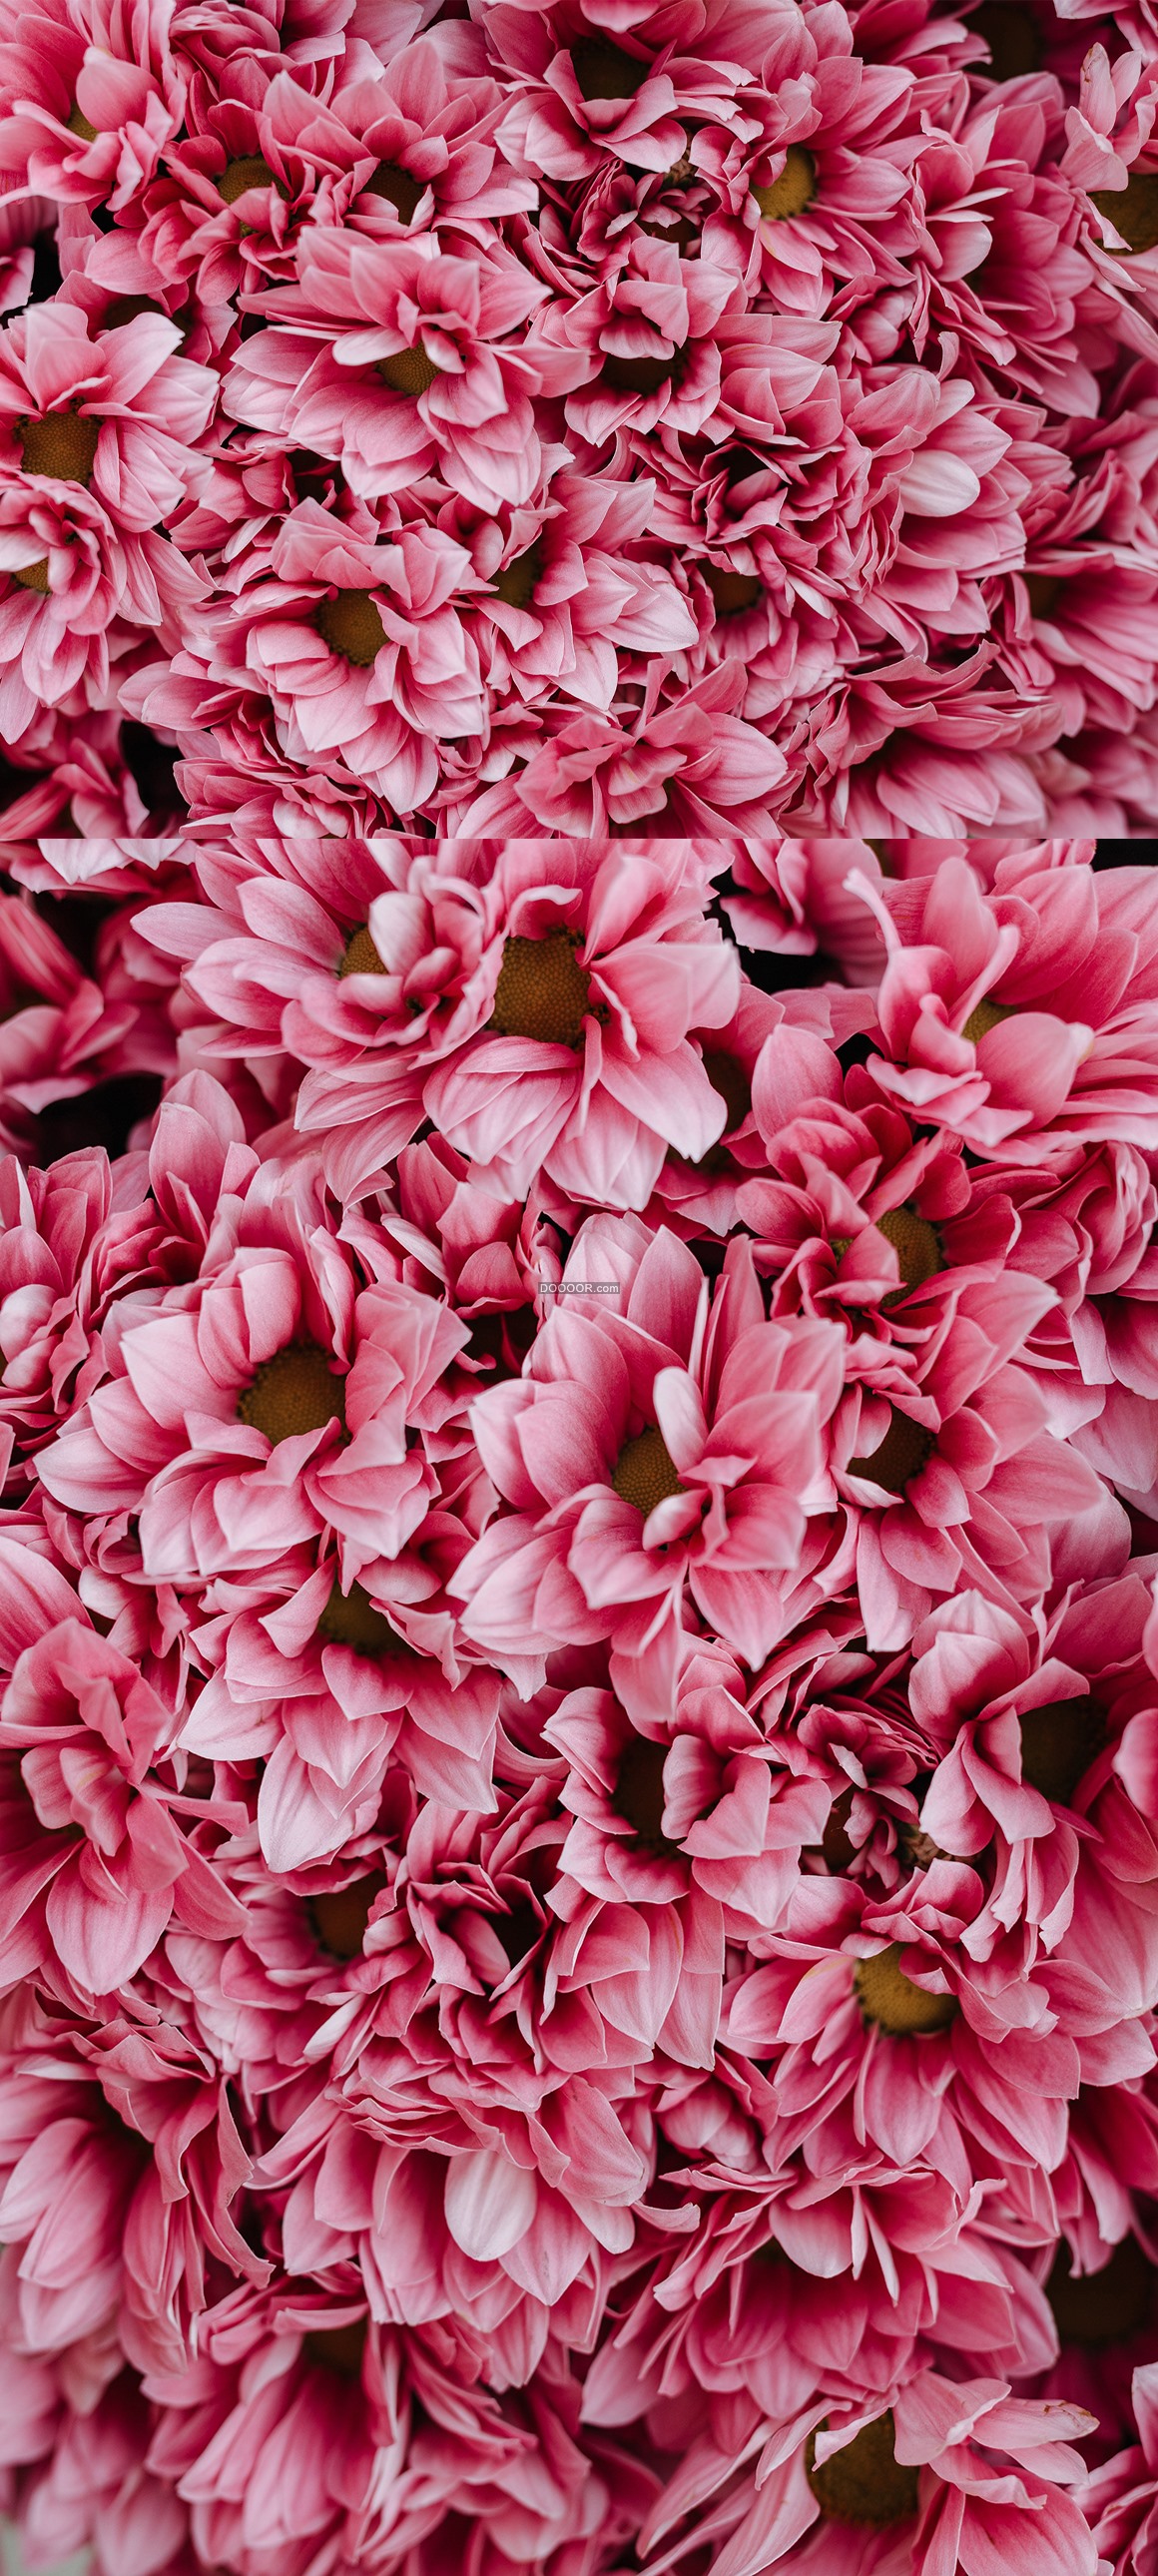 粉红色的玫瑰花海 - 全部作品 - 素材集市